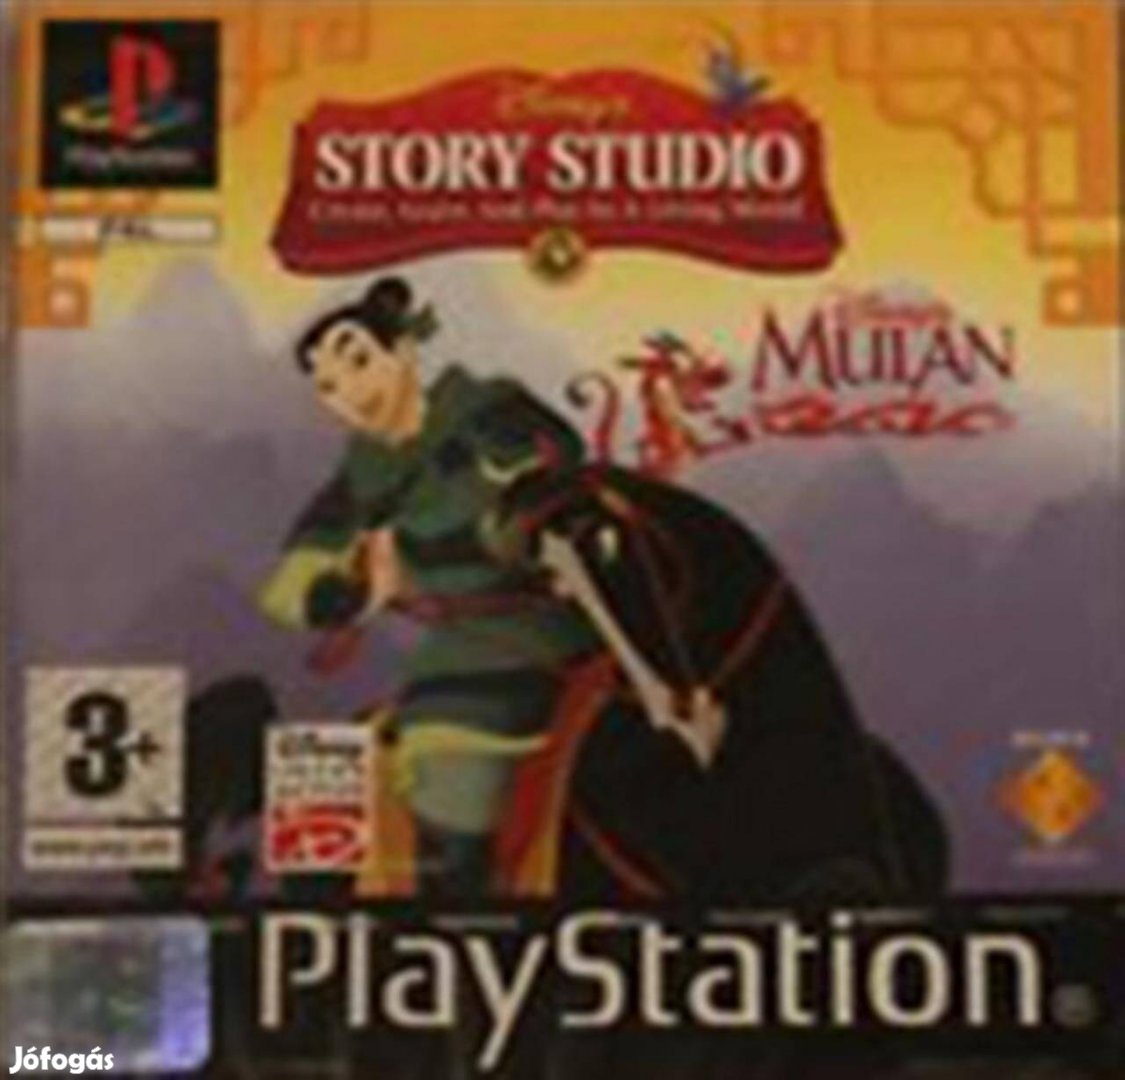 Playstation 4 Disney's Story Studio Mulan, Boxed